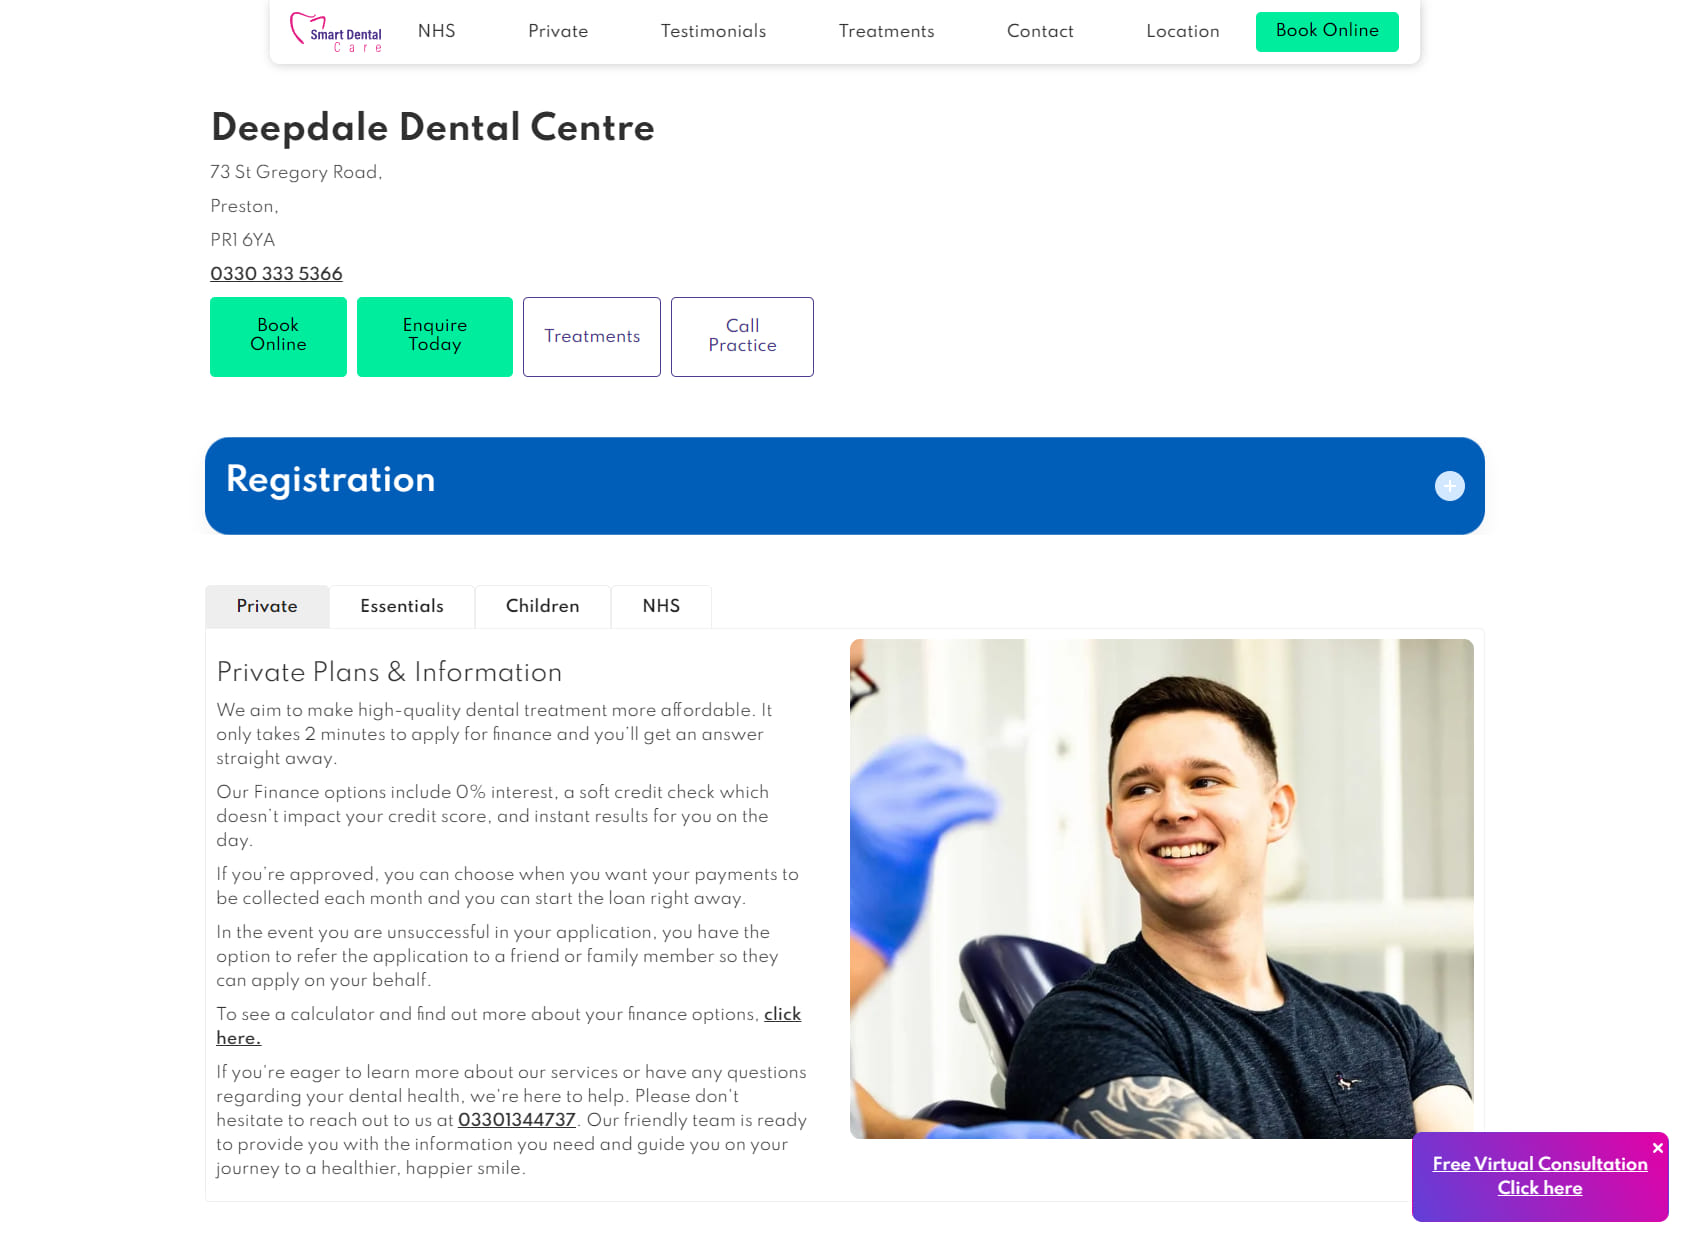 Smart Dental Care - Deepdale Dental Centre